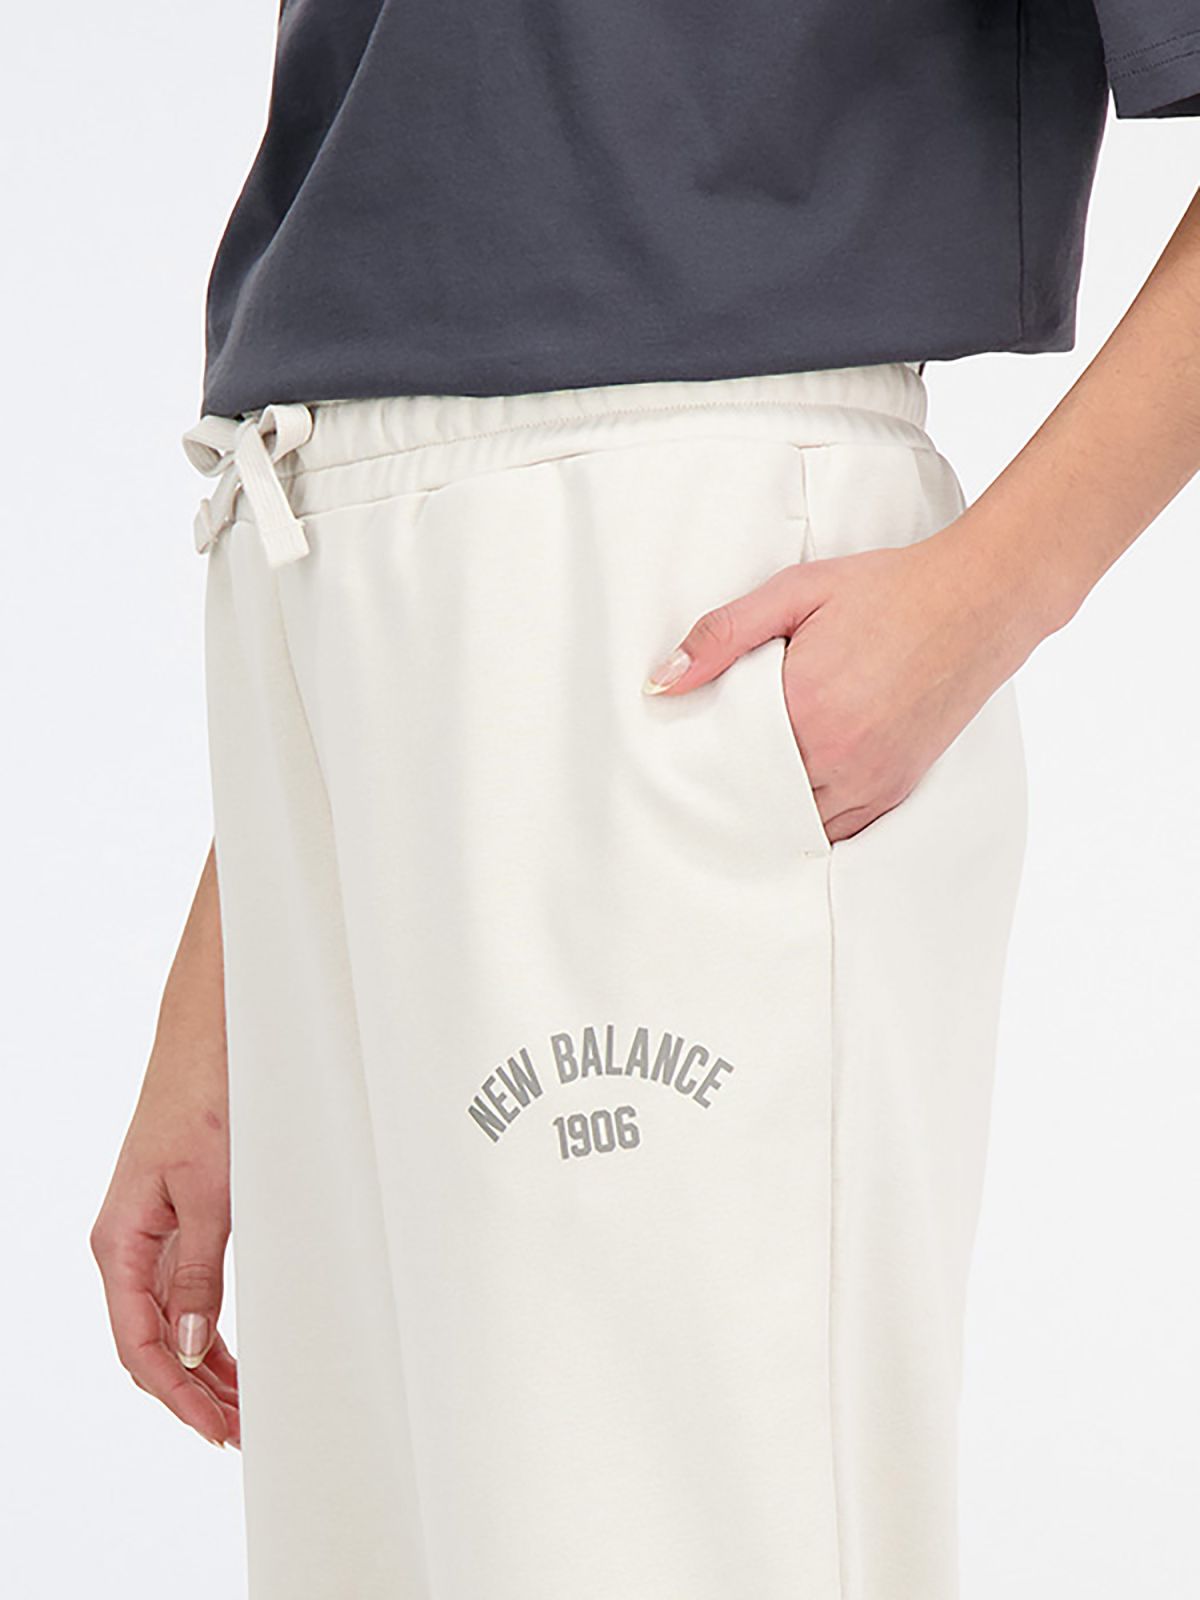  מכנסי טרנינג עם לוגו של NEW BALANCE